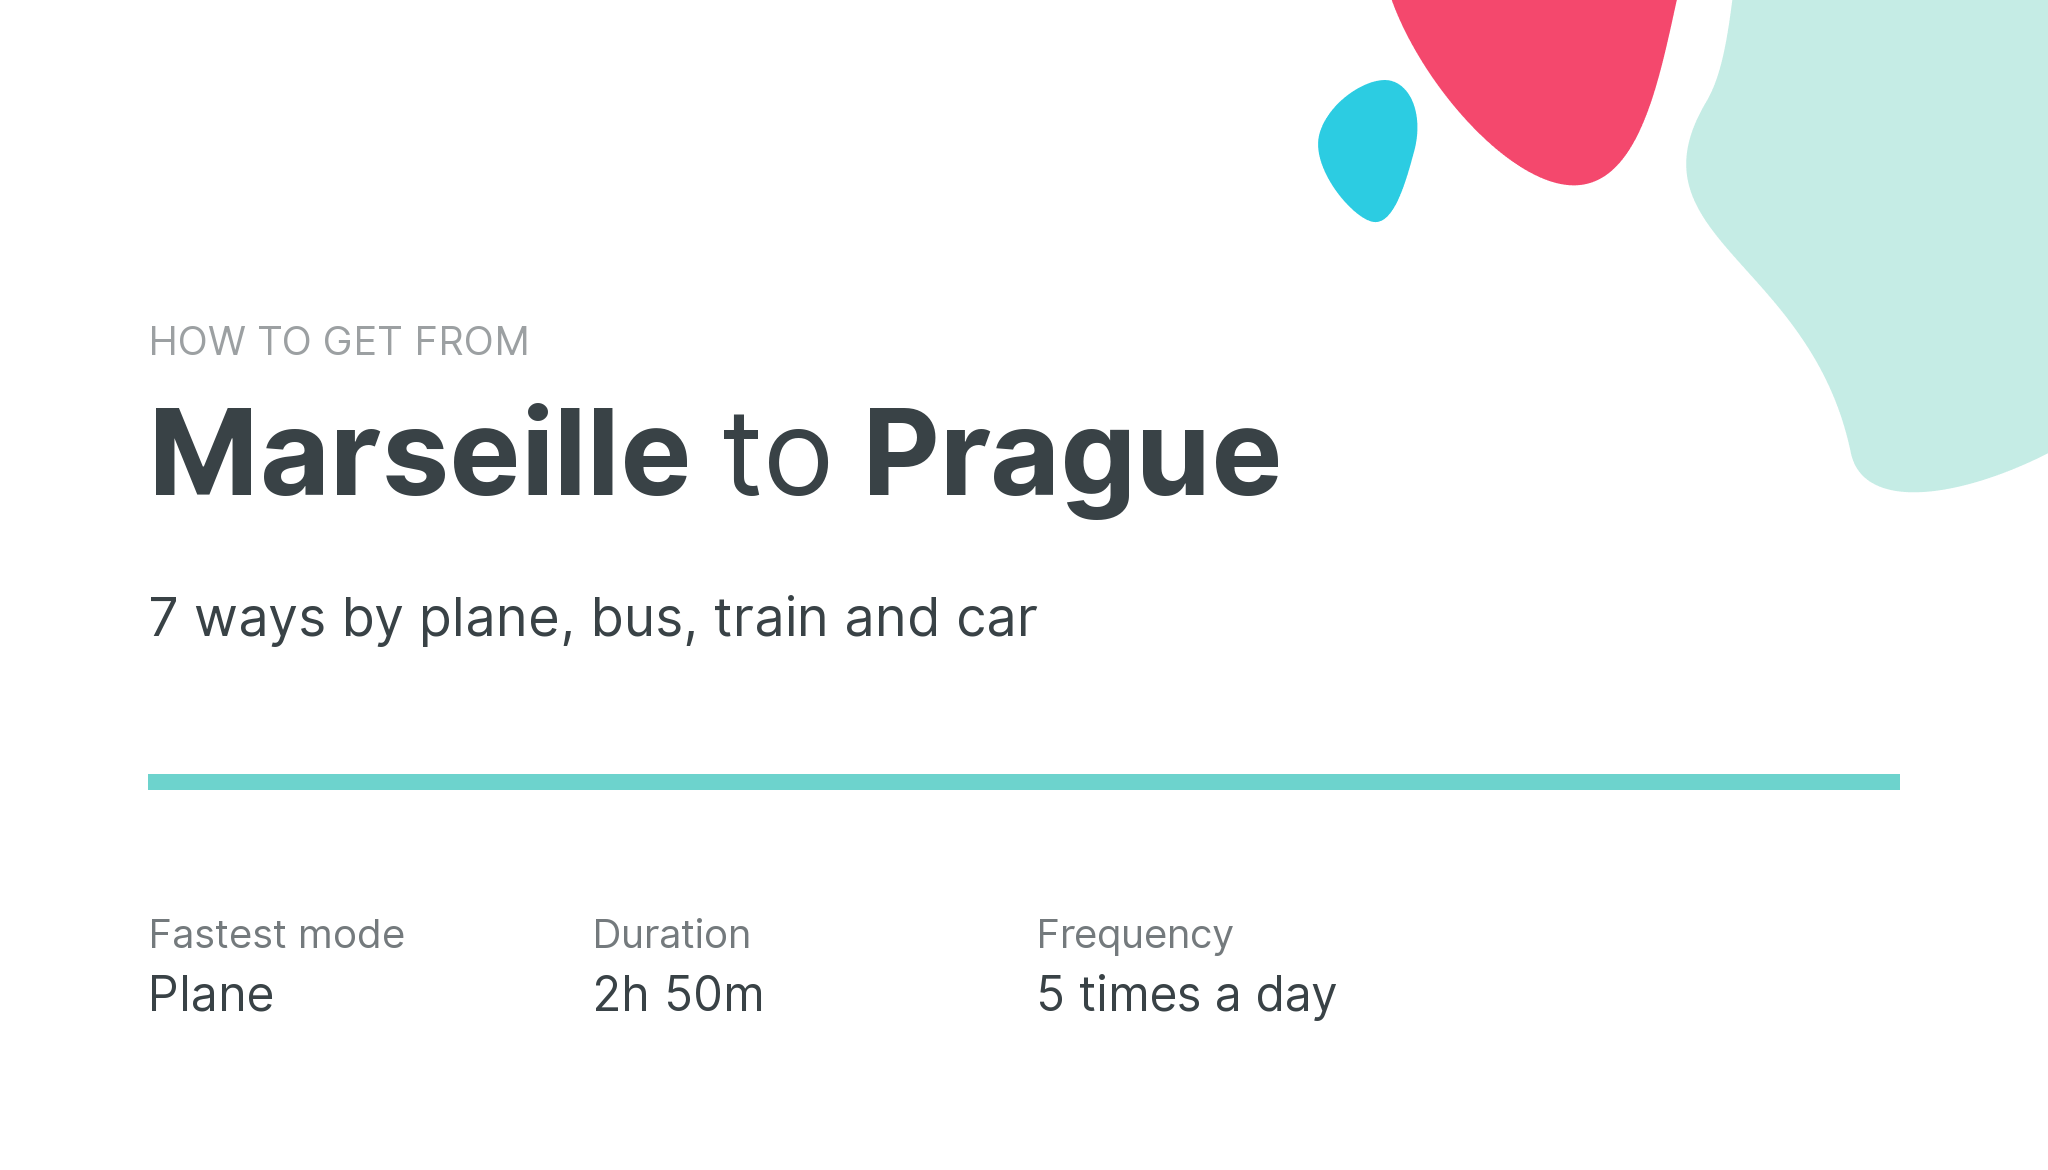 How do I get from Marseille to Prague